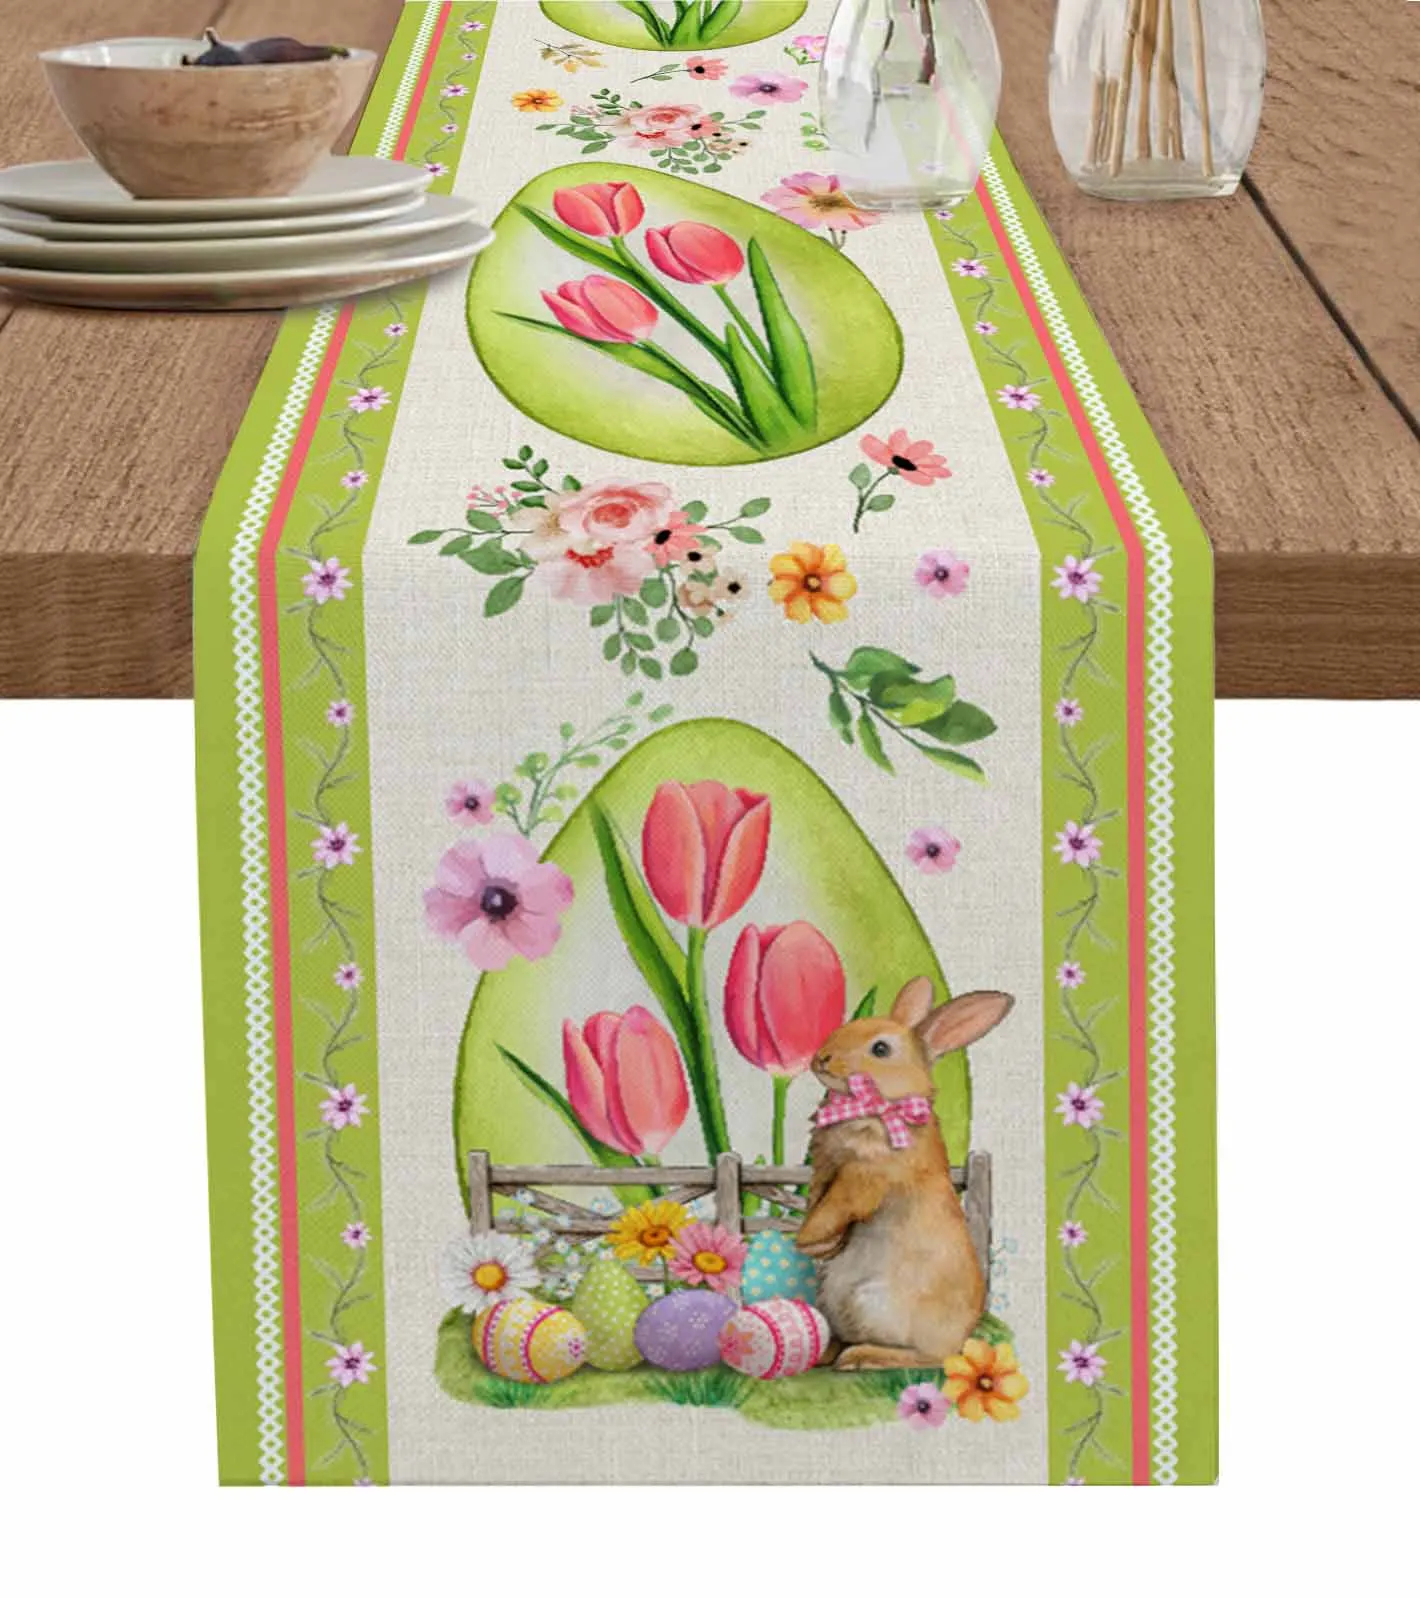 

Vintage Rabbit Easter Flower Green Egg Table Runner Decoration Home Decor Dinner Table Decoration Table Decor